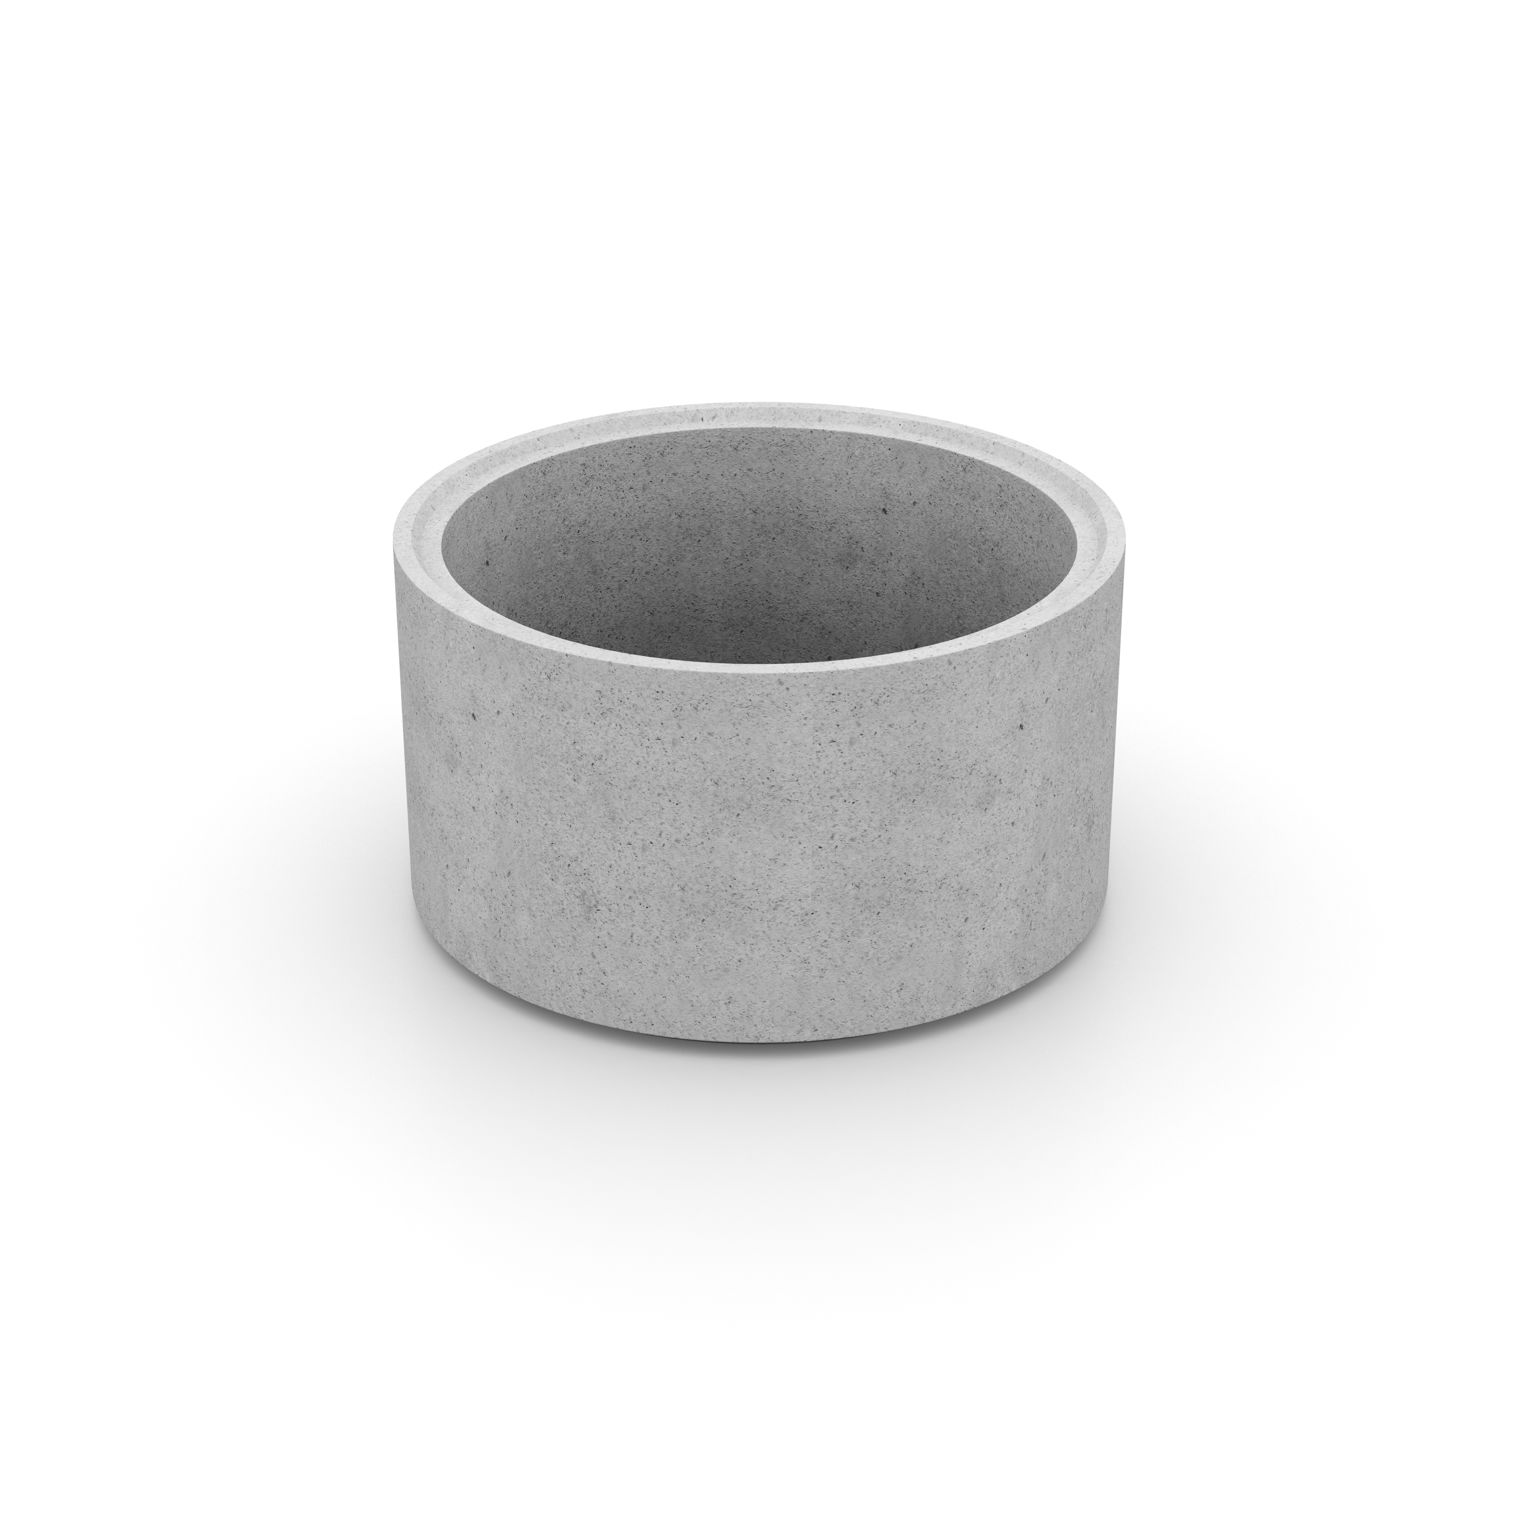 Produktbild av en cementfogad brunnsring i formatet: 1000x600 mm